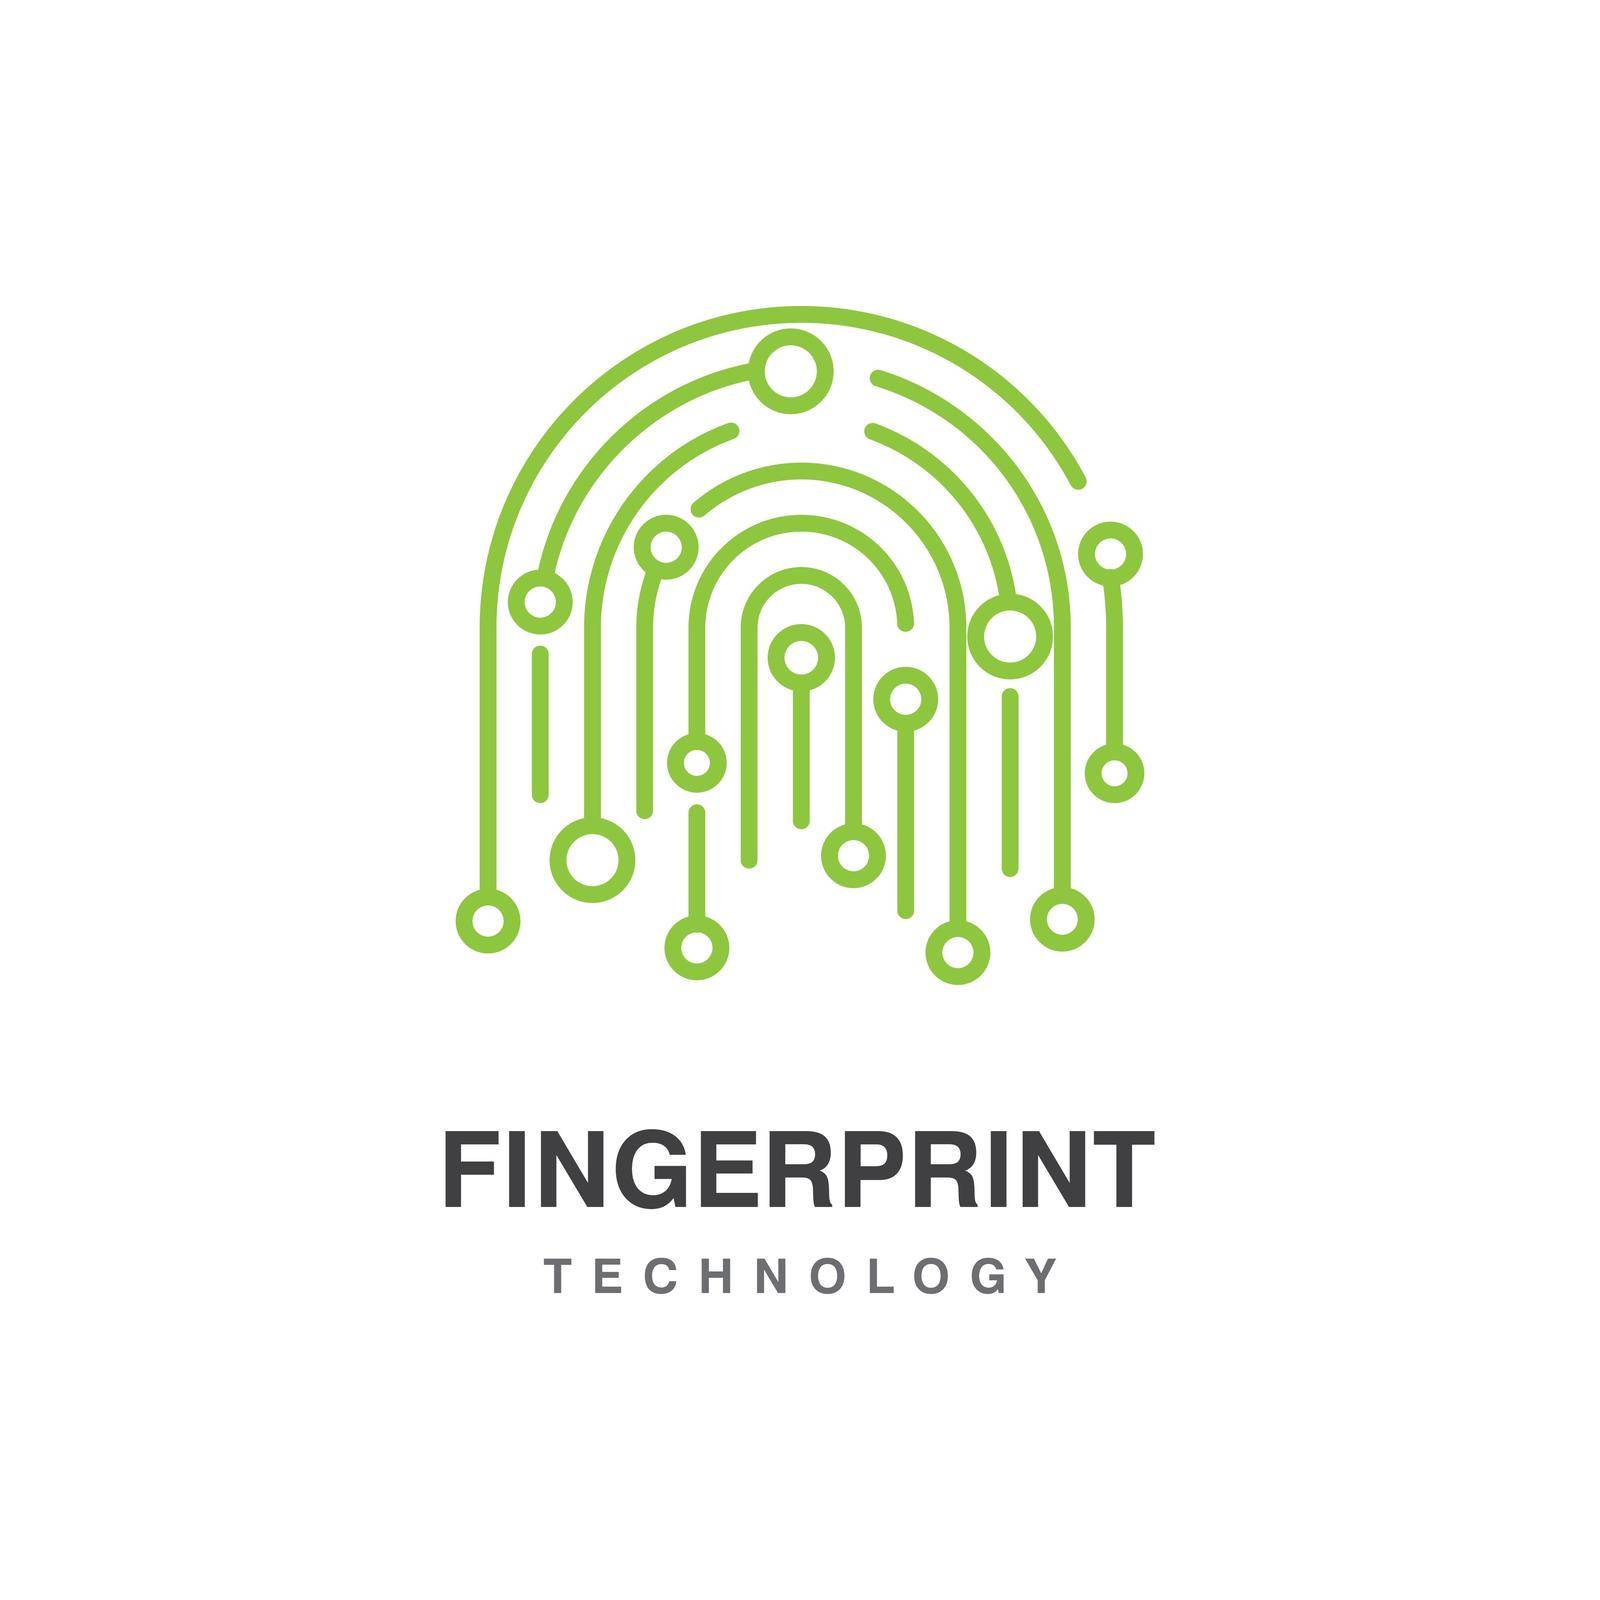 Fingerprint by awk